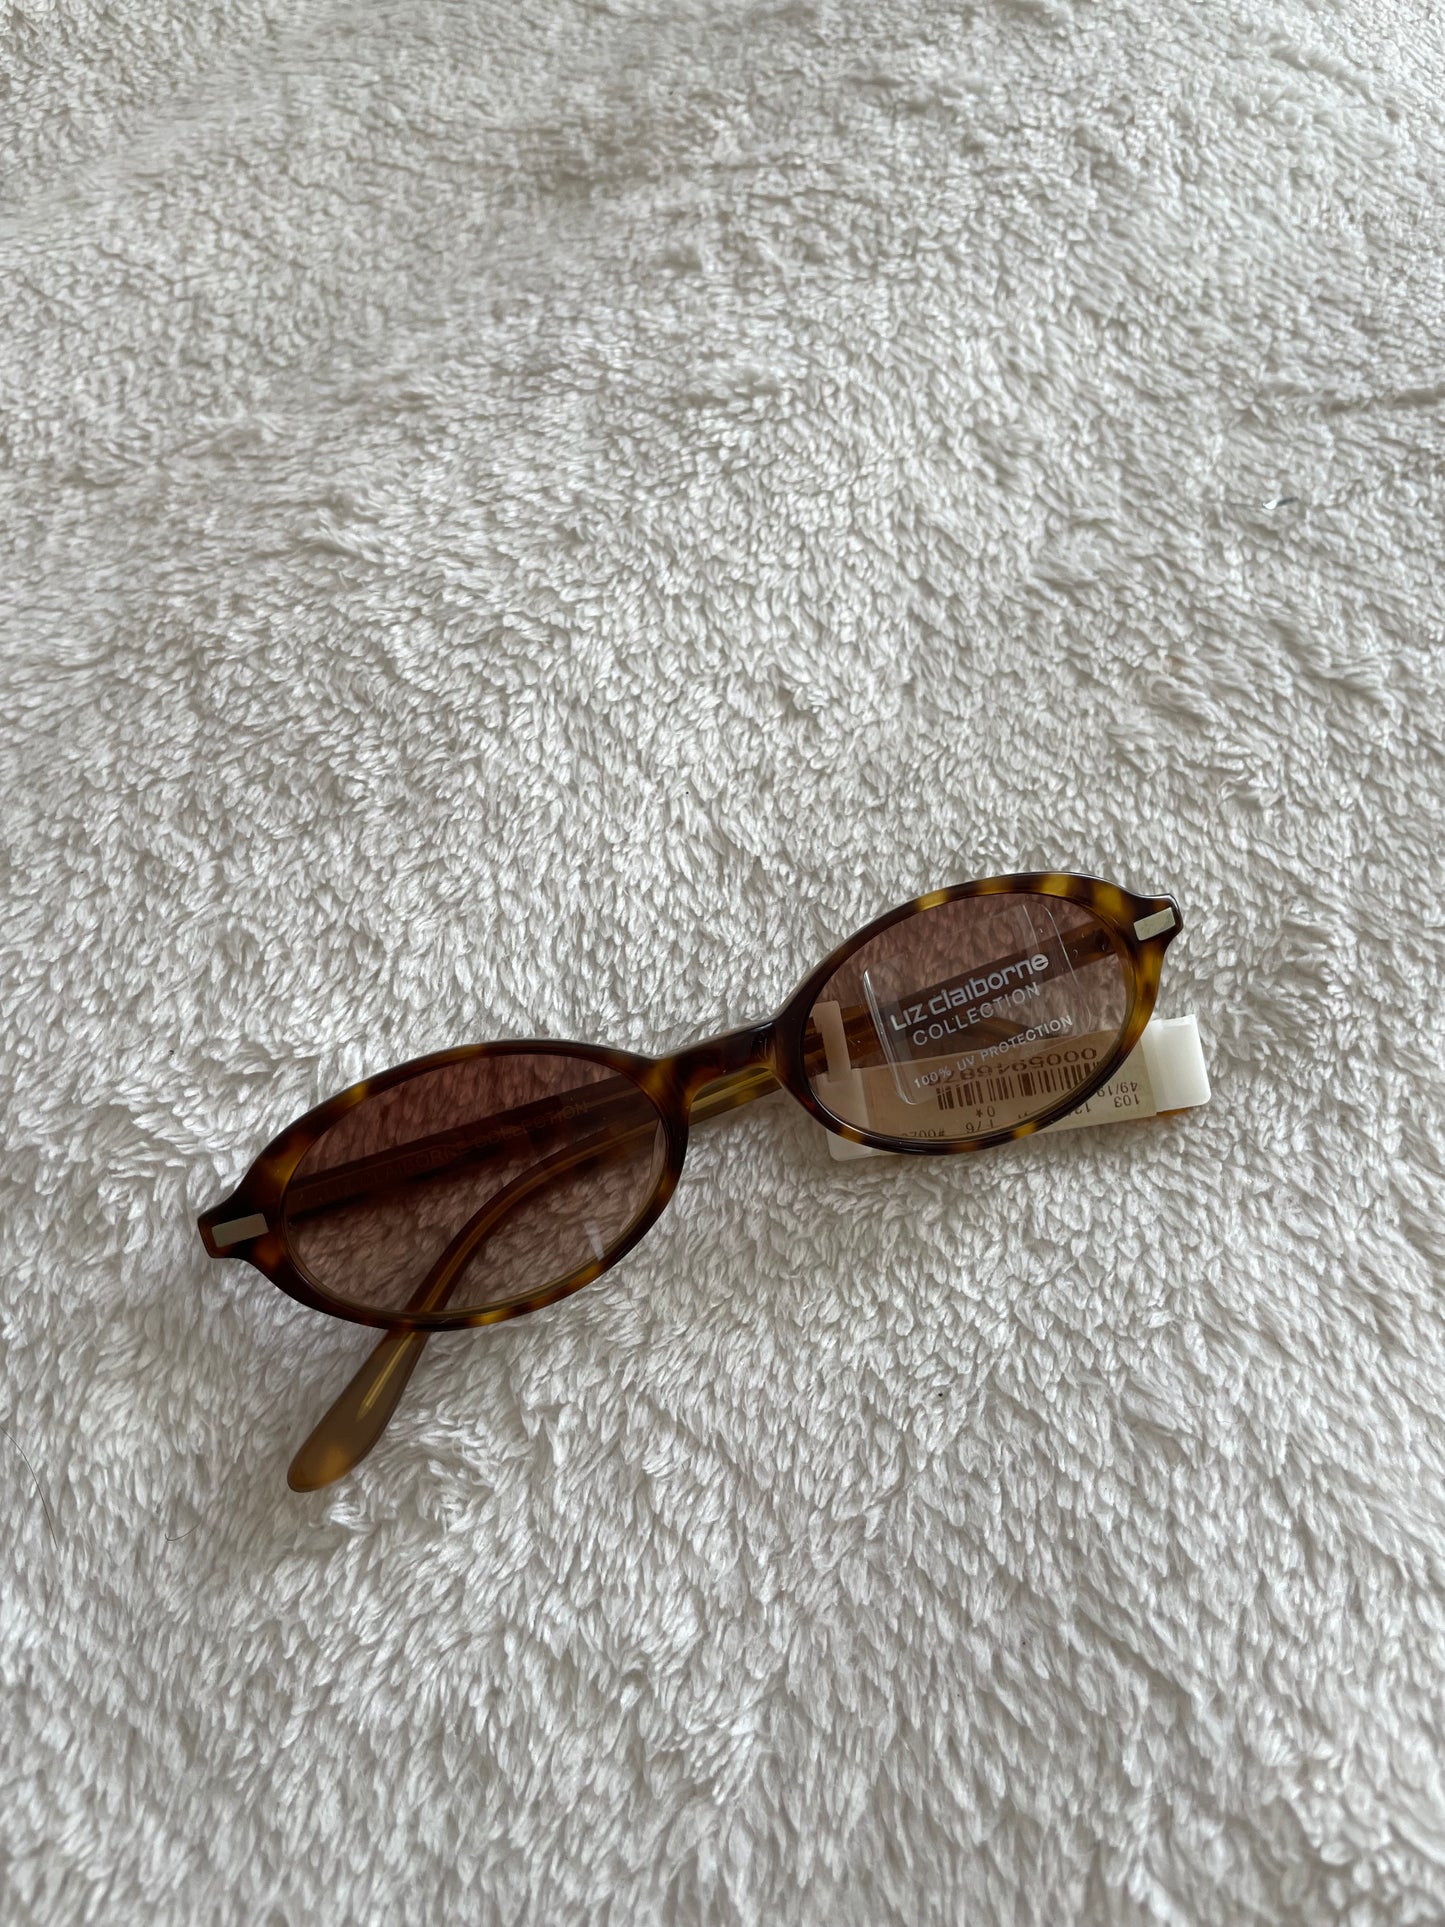 Tortoise shell 90s Liz Claiborne glasses